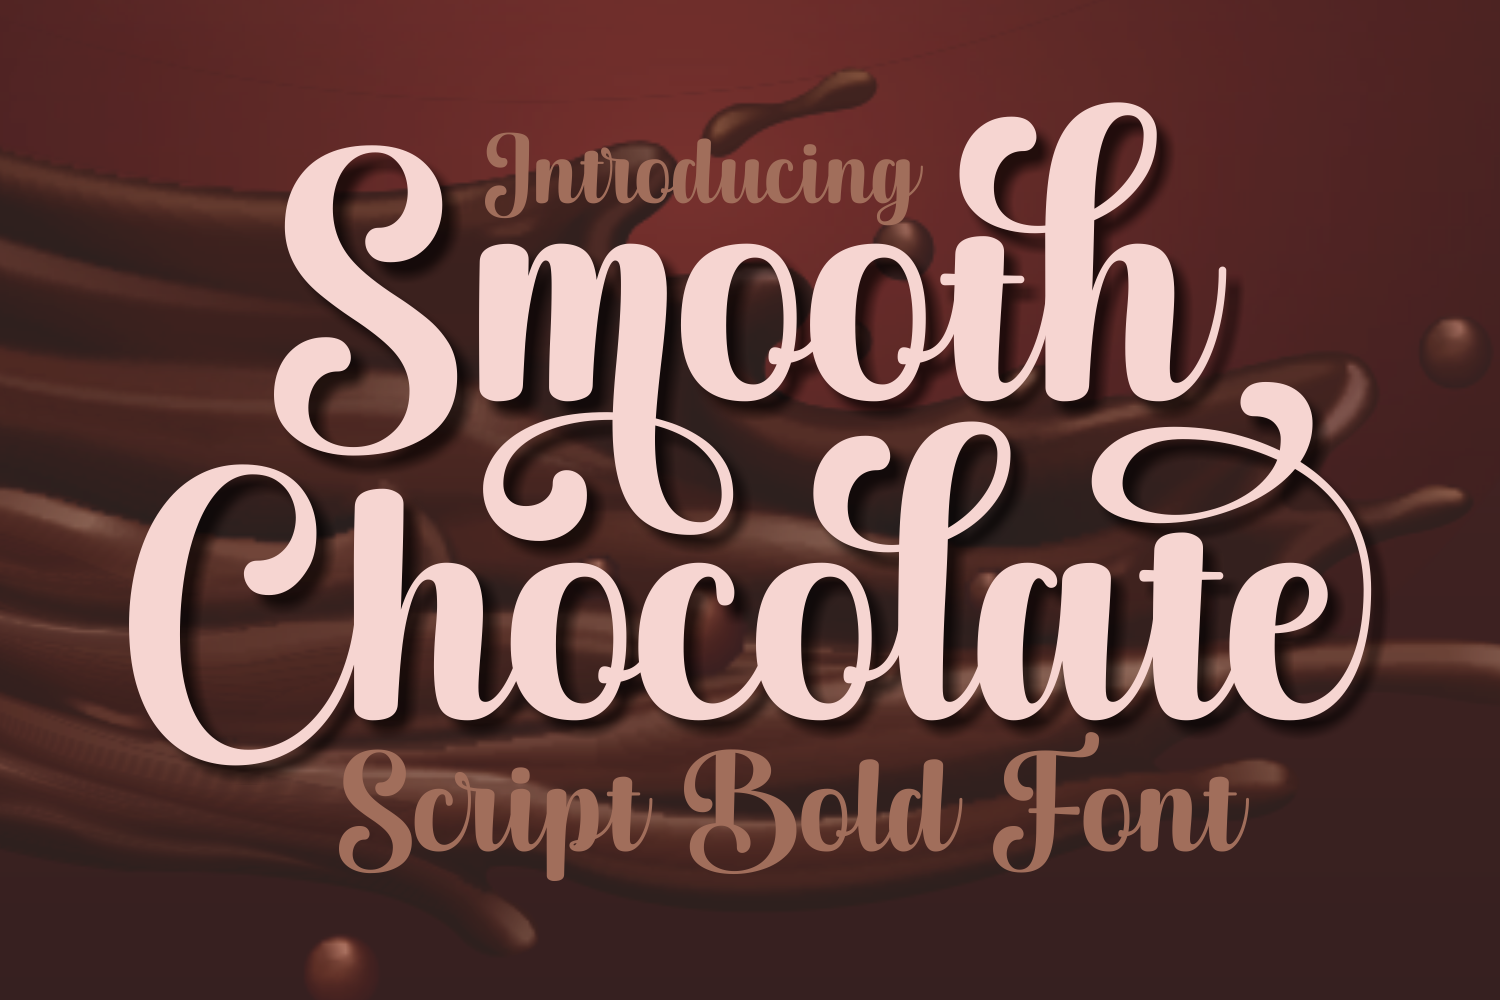 光滑的巧克力字体 脚本字体 情人节字体 可爱的字体 巧克力字体 牛奶字体